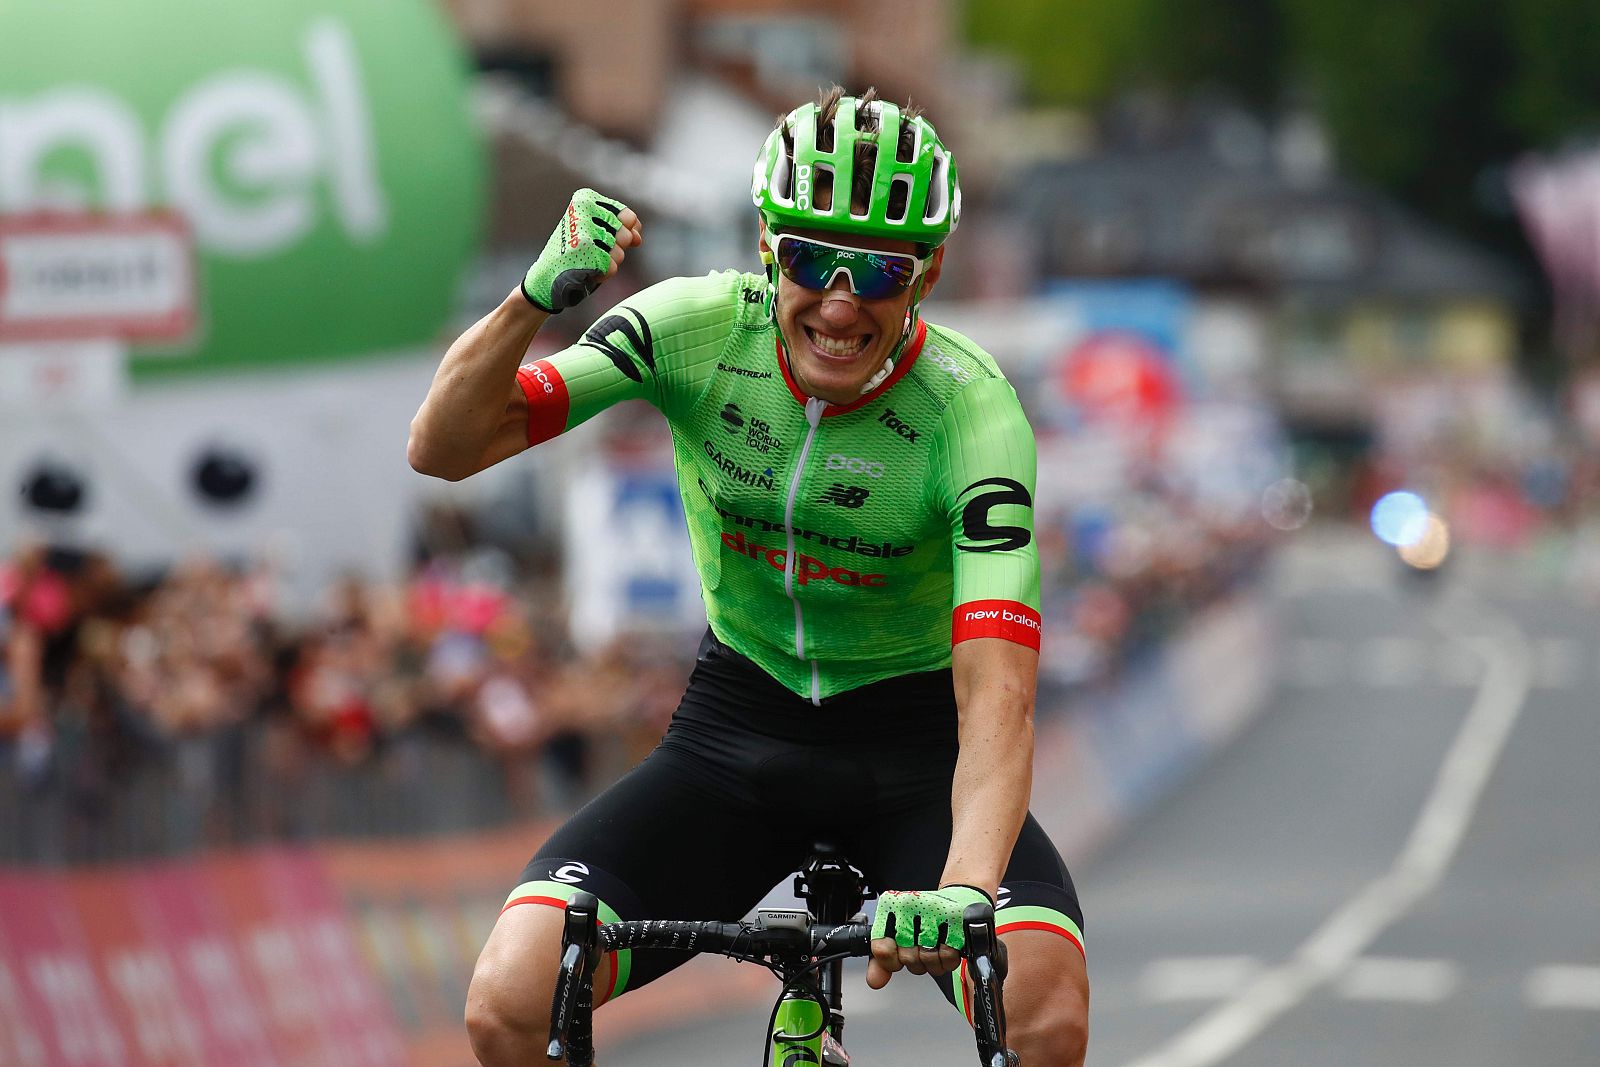 Pierre Rolland (Cannondale) celebra en meta su victoria en la etapa 17.